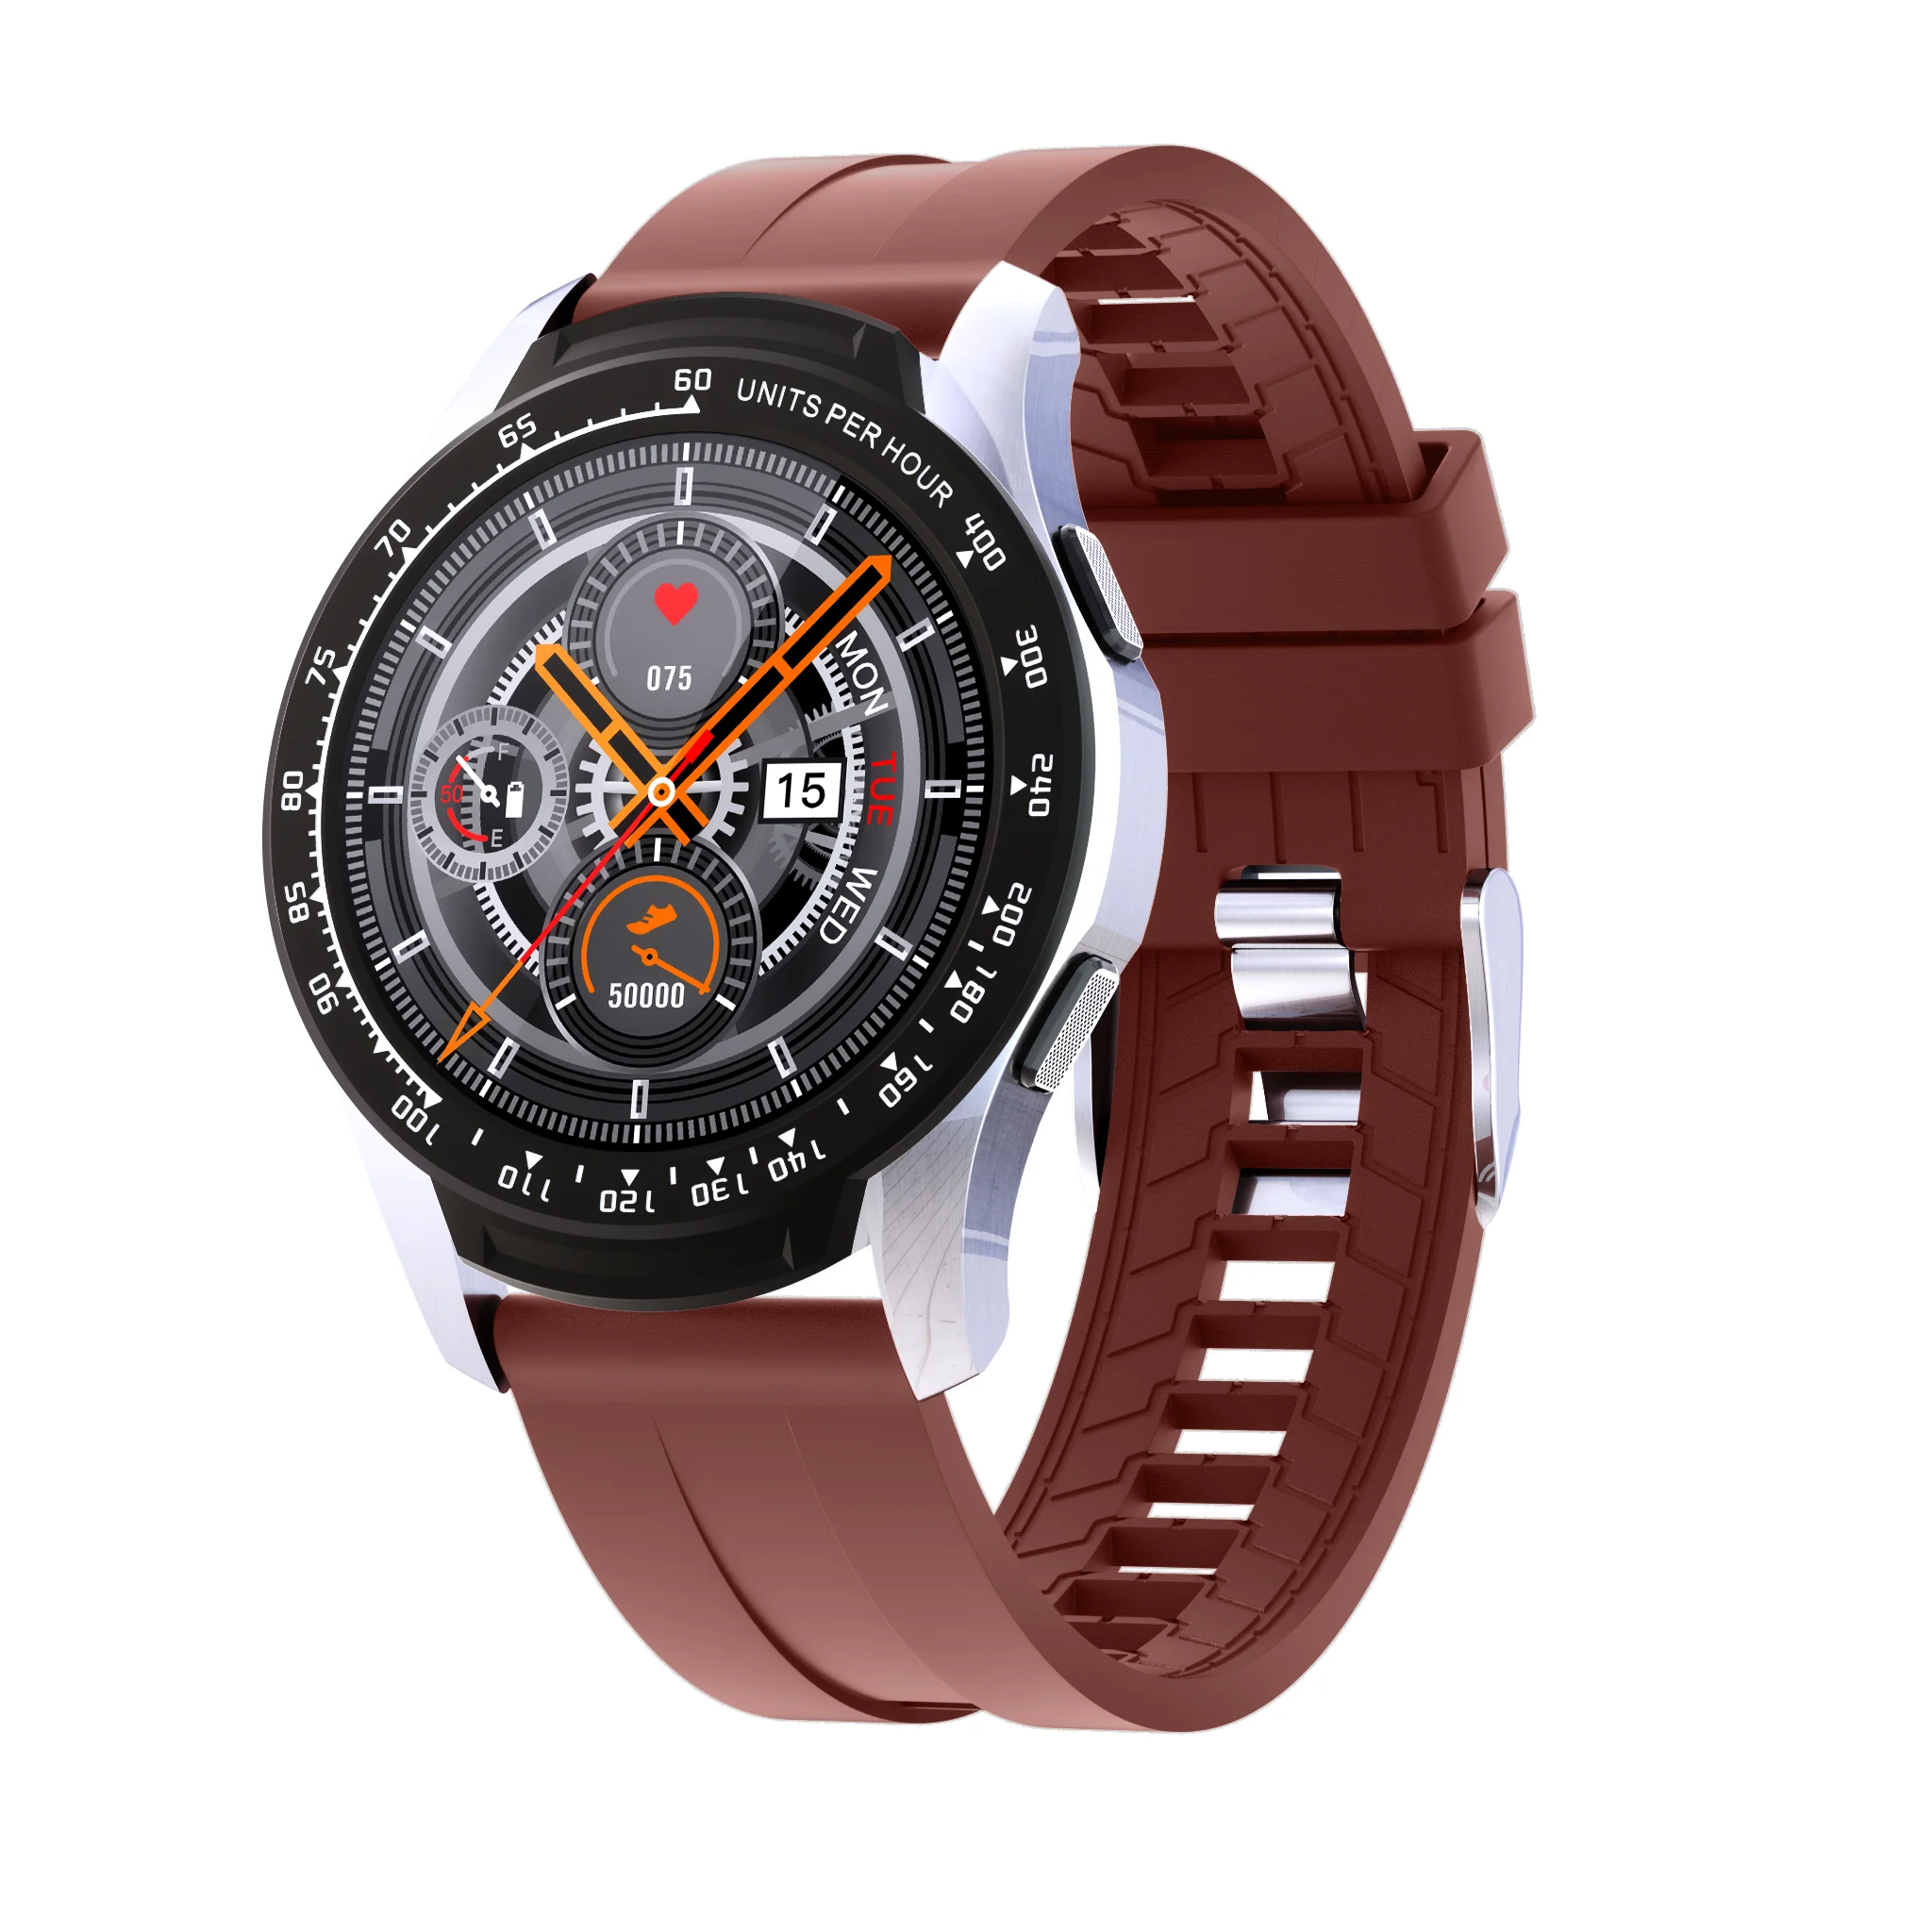 

new B16 mobile watch smartwatch relojes inteligente wholesale men luxury best fitness tracker